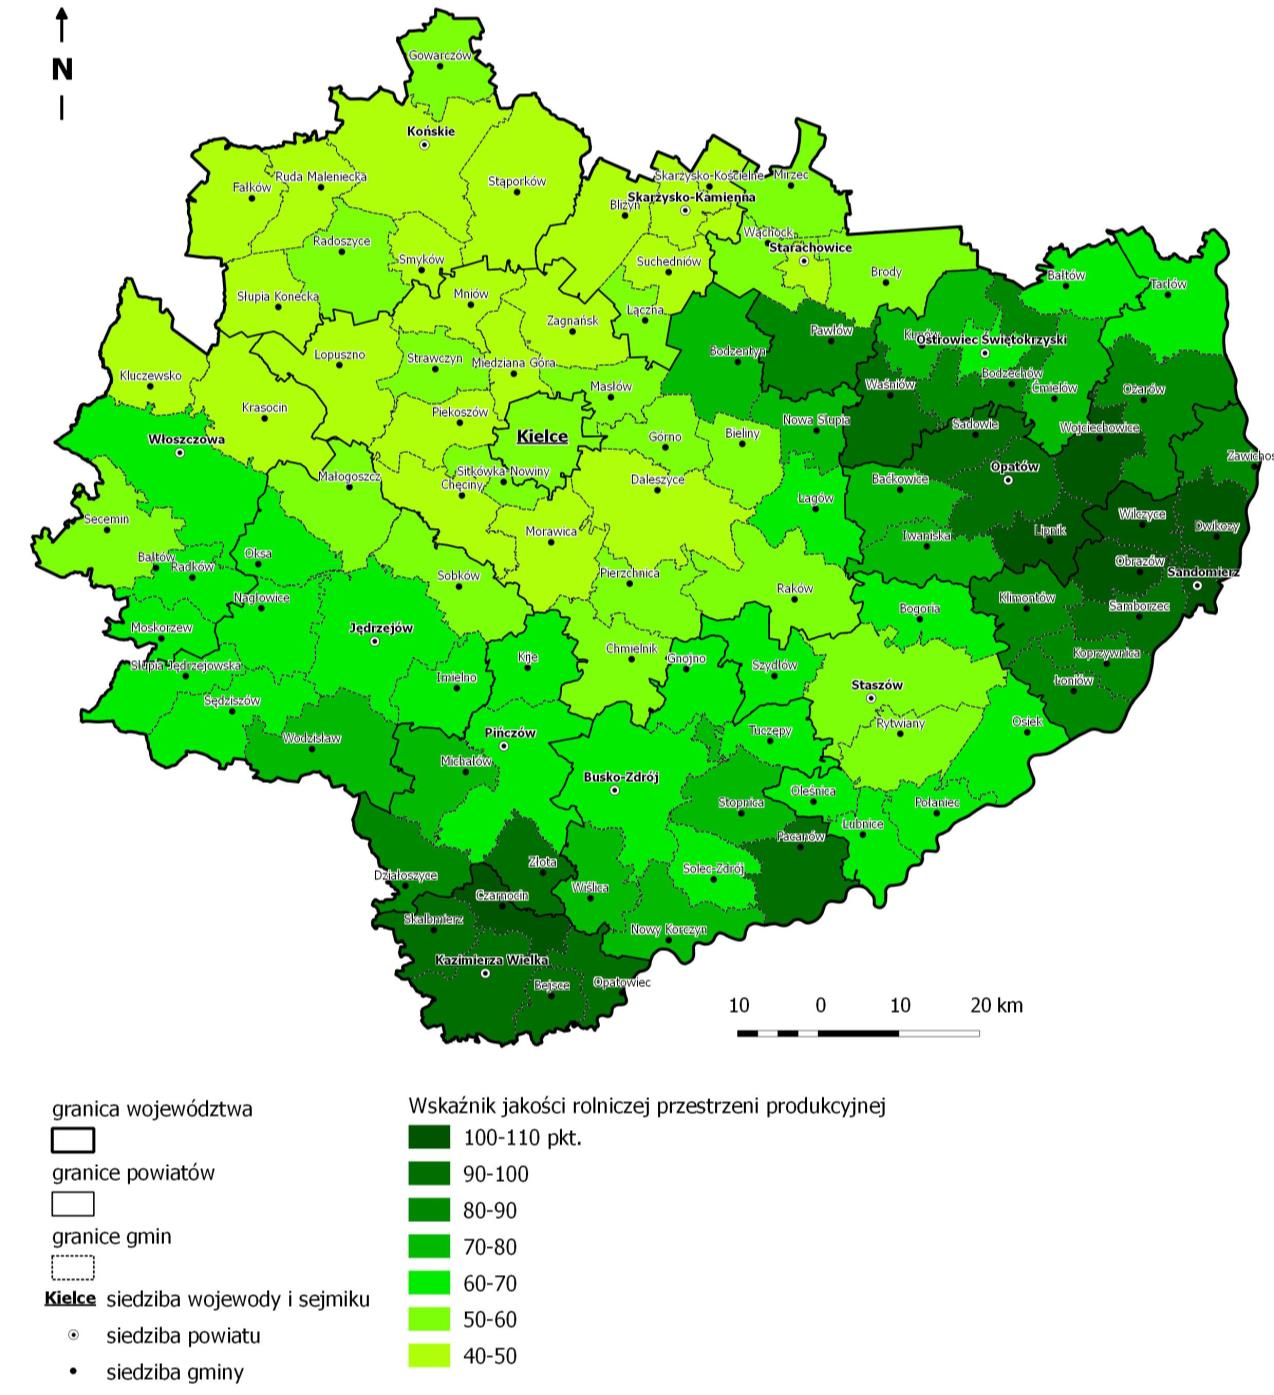 świętokrzyskie plasuje się powyżej średniej krajowej i pomimo wyraźnej polaryzacji przestrzennej umożliwia produkcję płodów rolnych o wysokiej jakości. W województwie świętokrzyskim 176,3 tys.